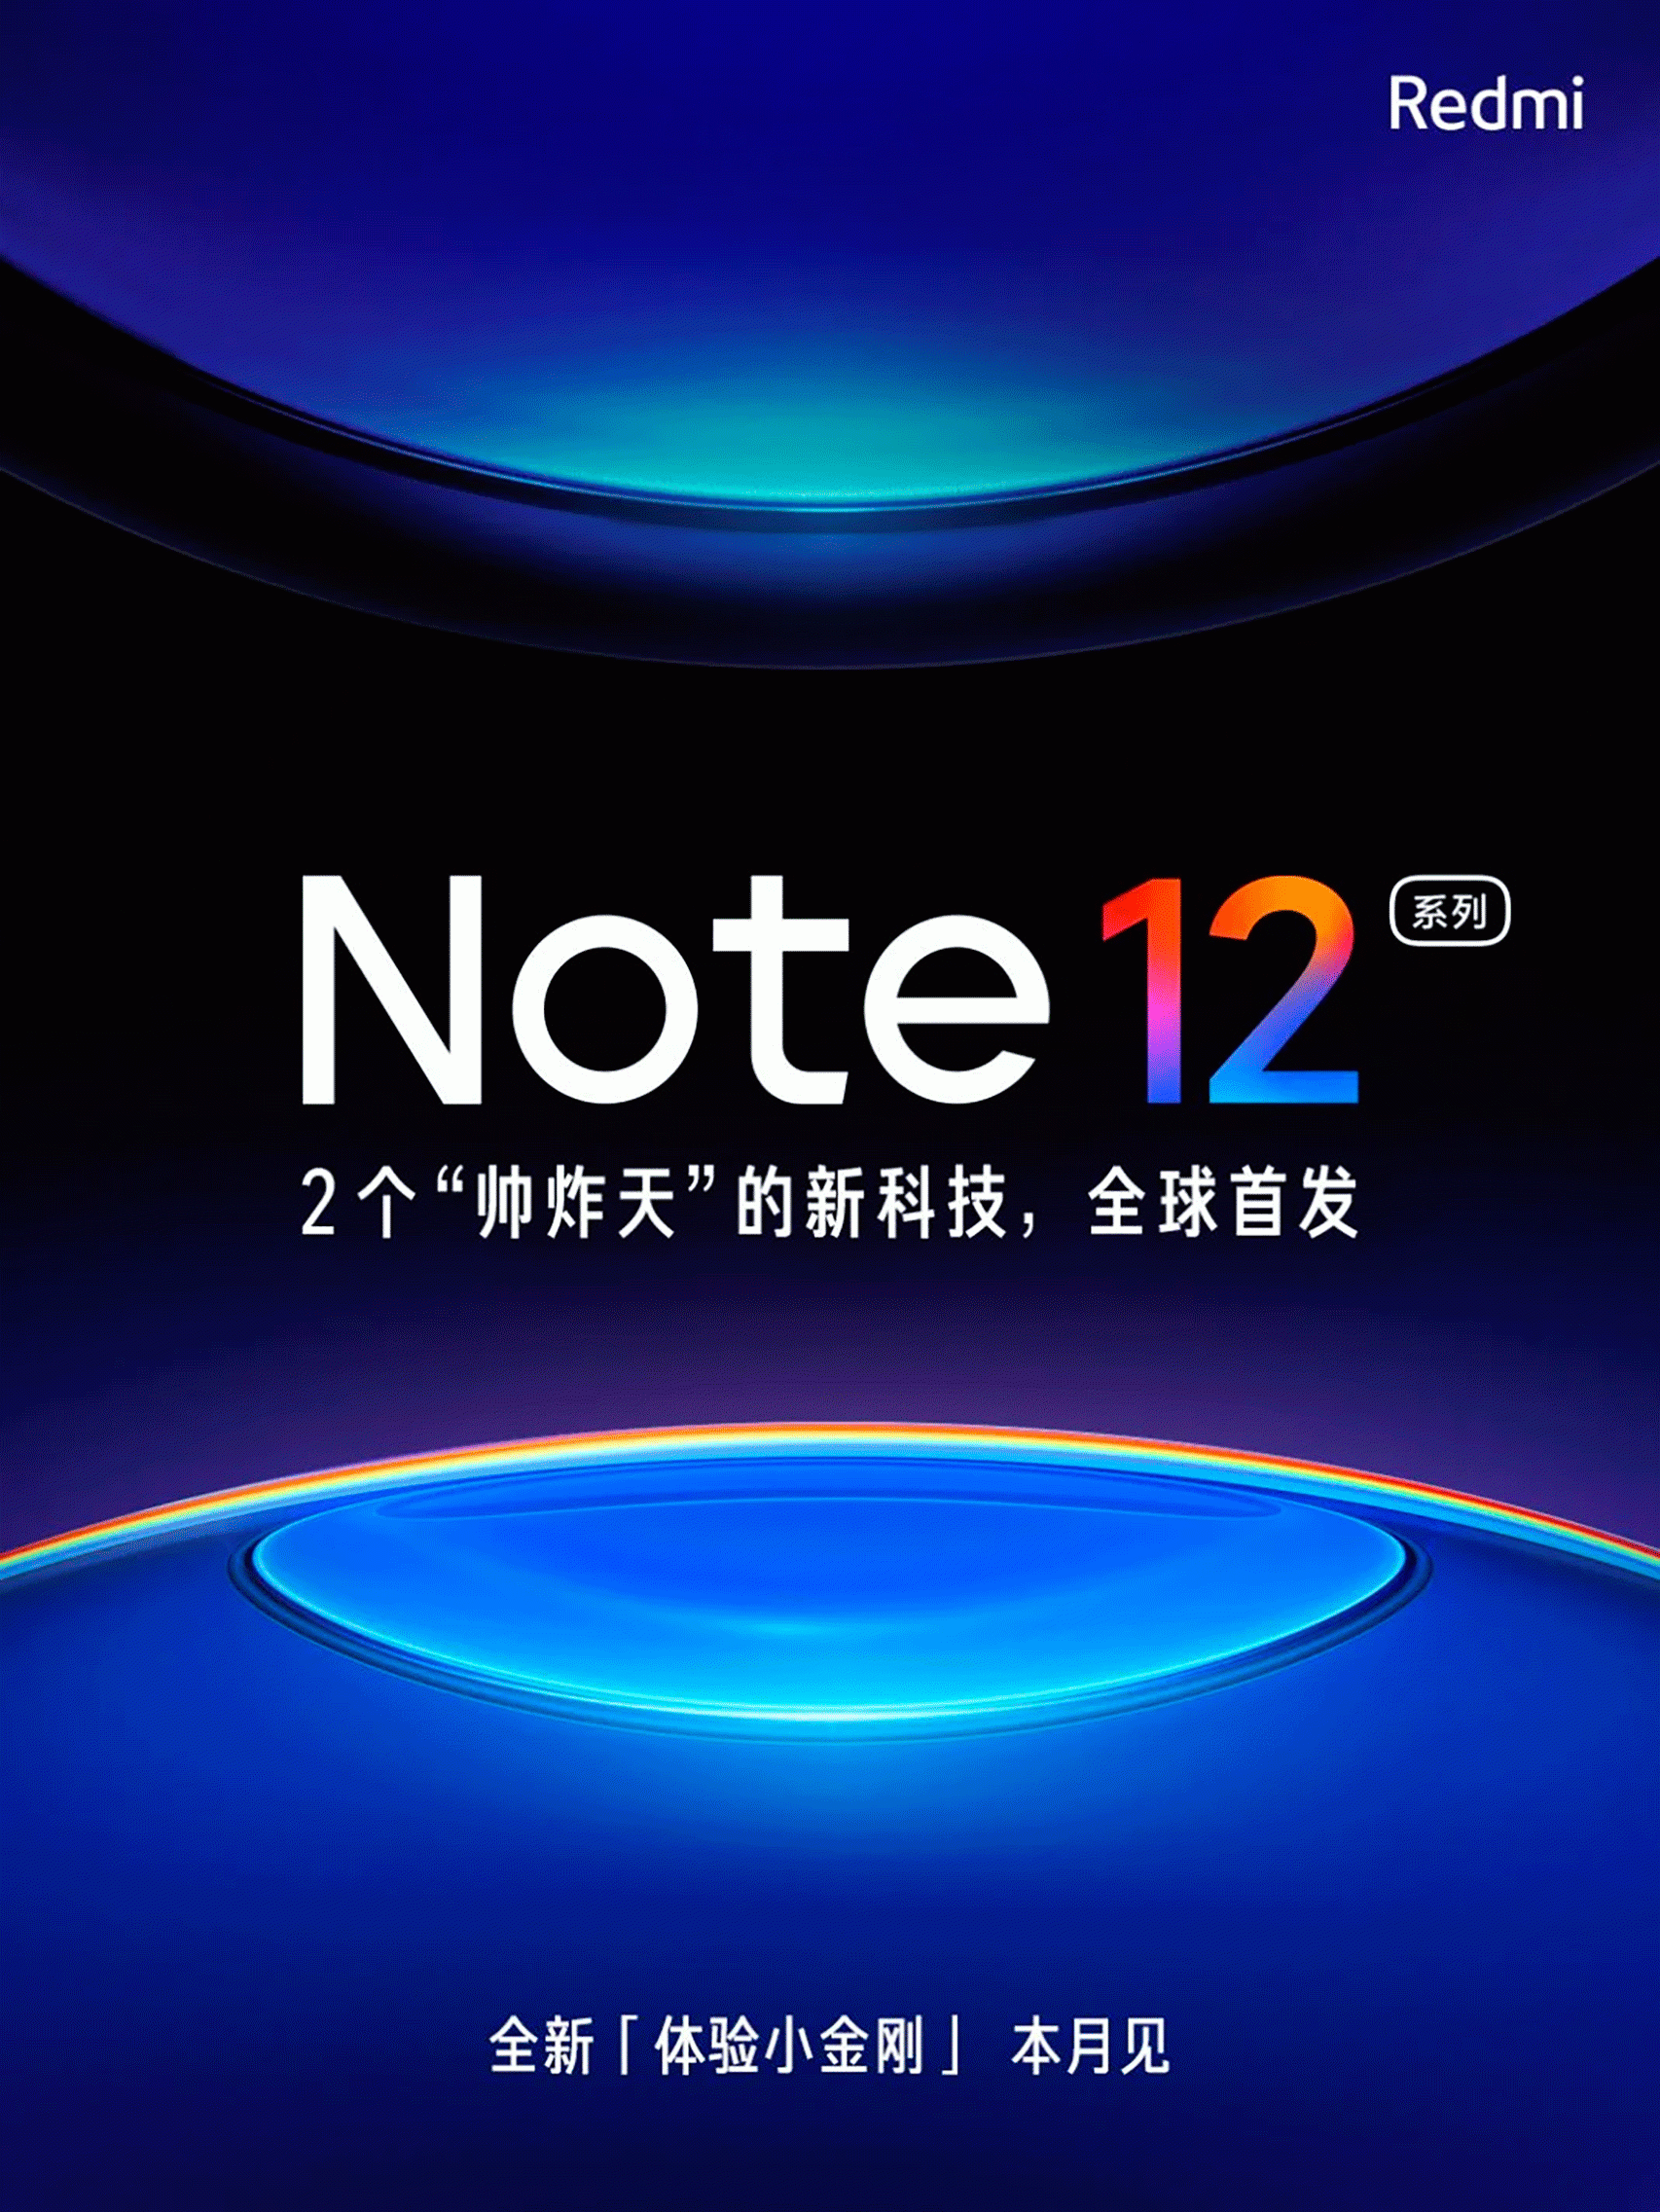 El teaser anunciando la serie Redmi Note 12 para su lanzamiento este mes